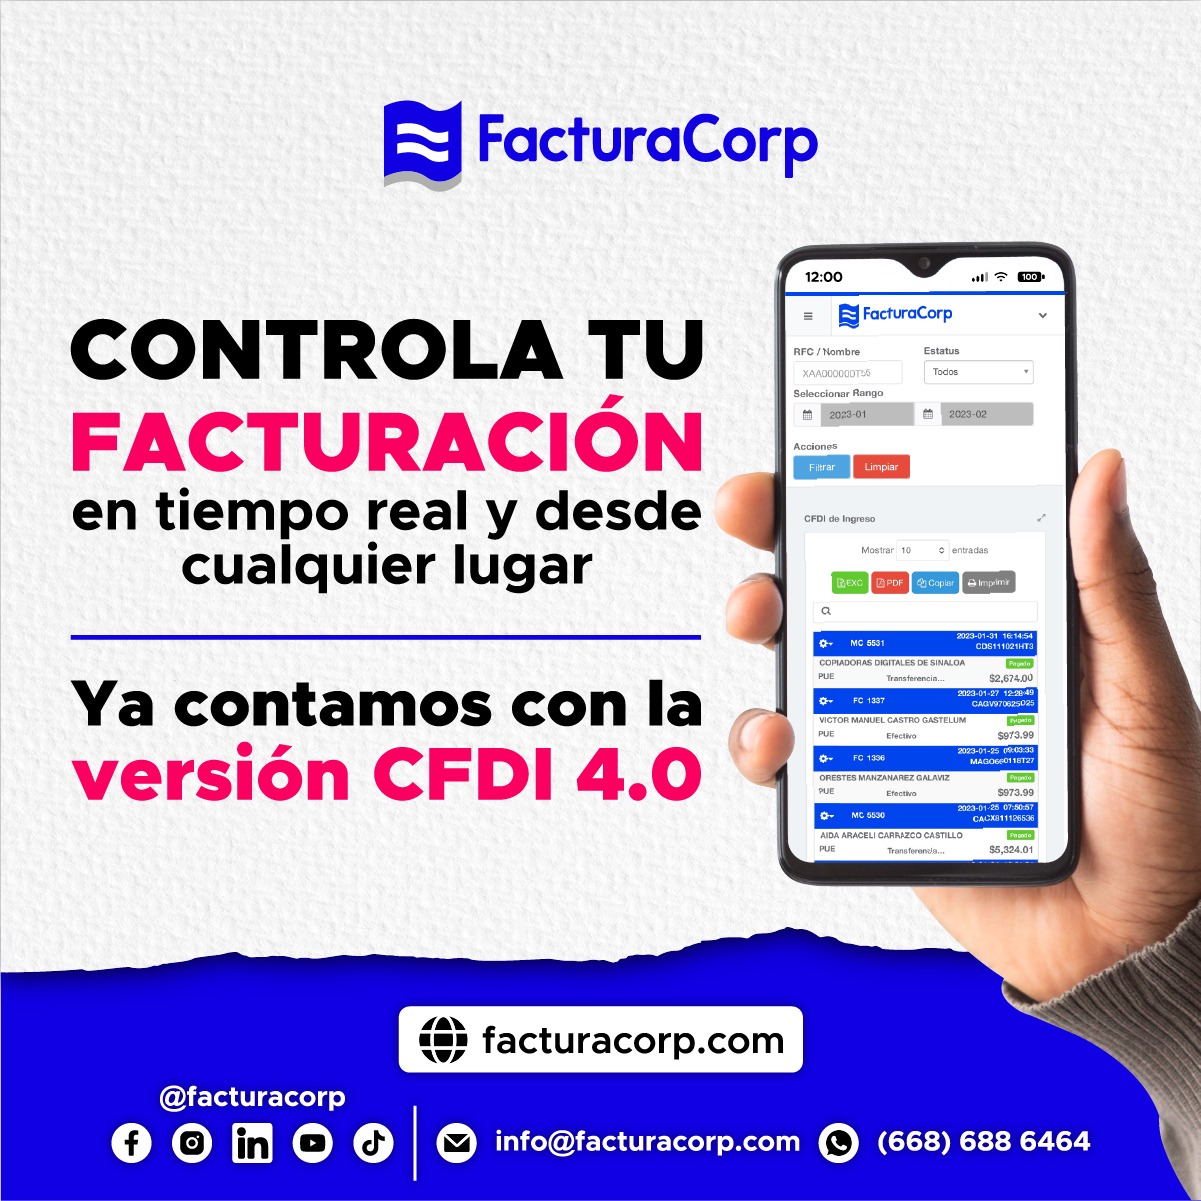 Publicidad - Factura Corp